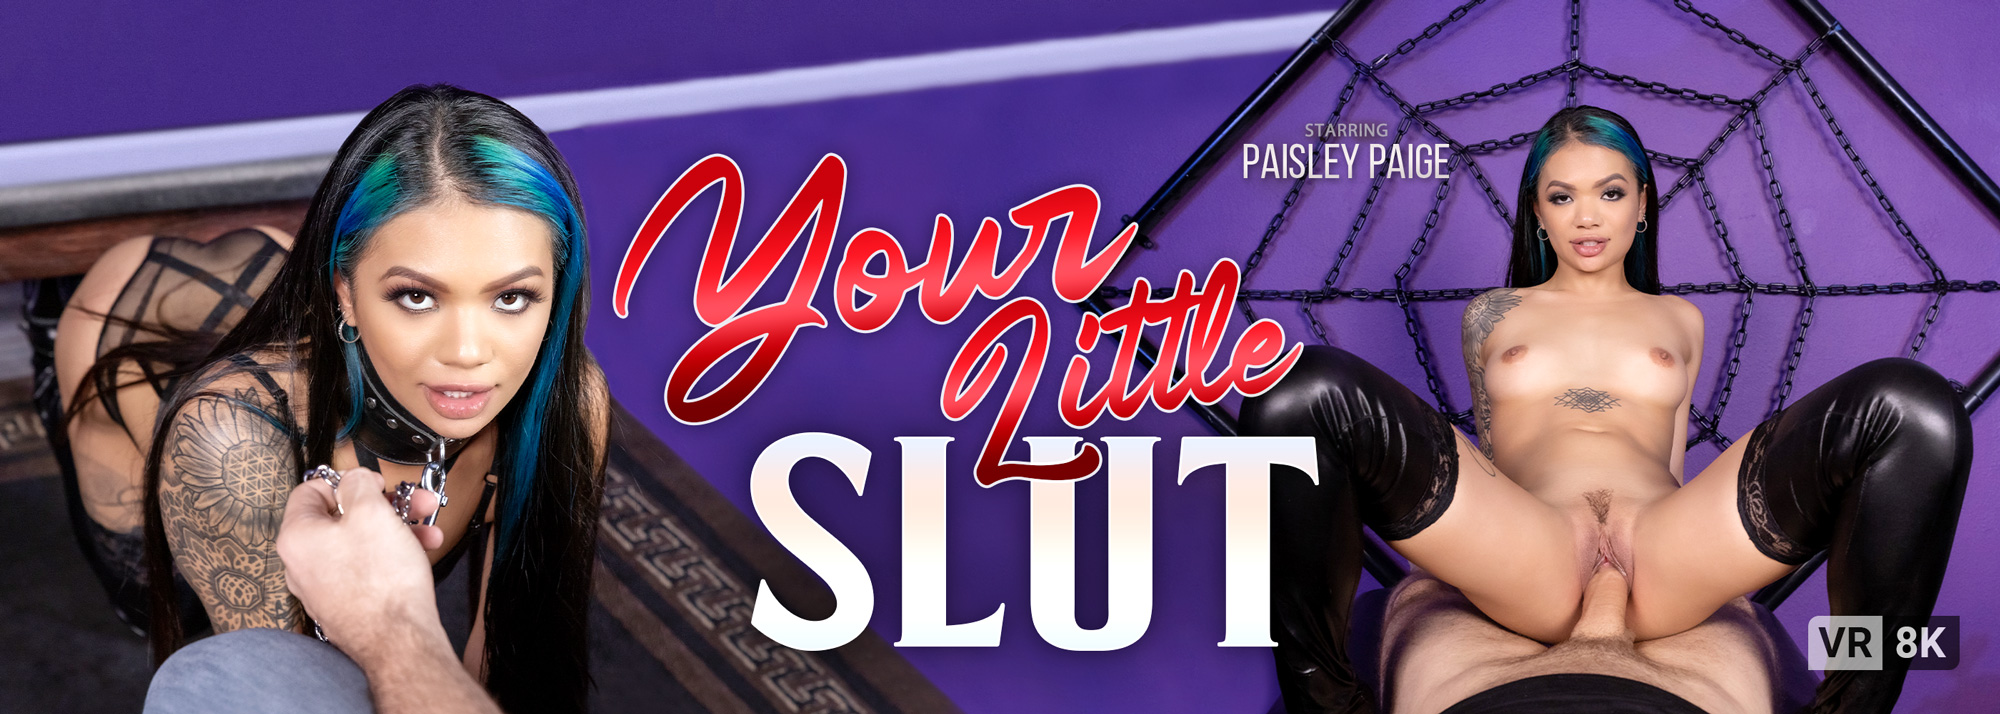 Your Little Slut - VR Porn Video, Starring: Paisley Paige